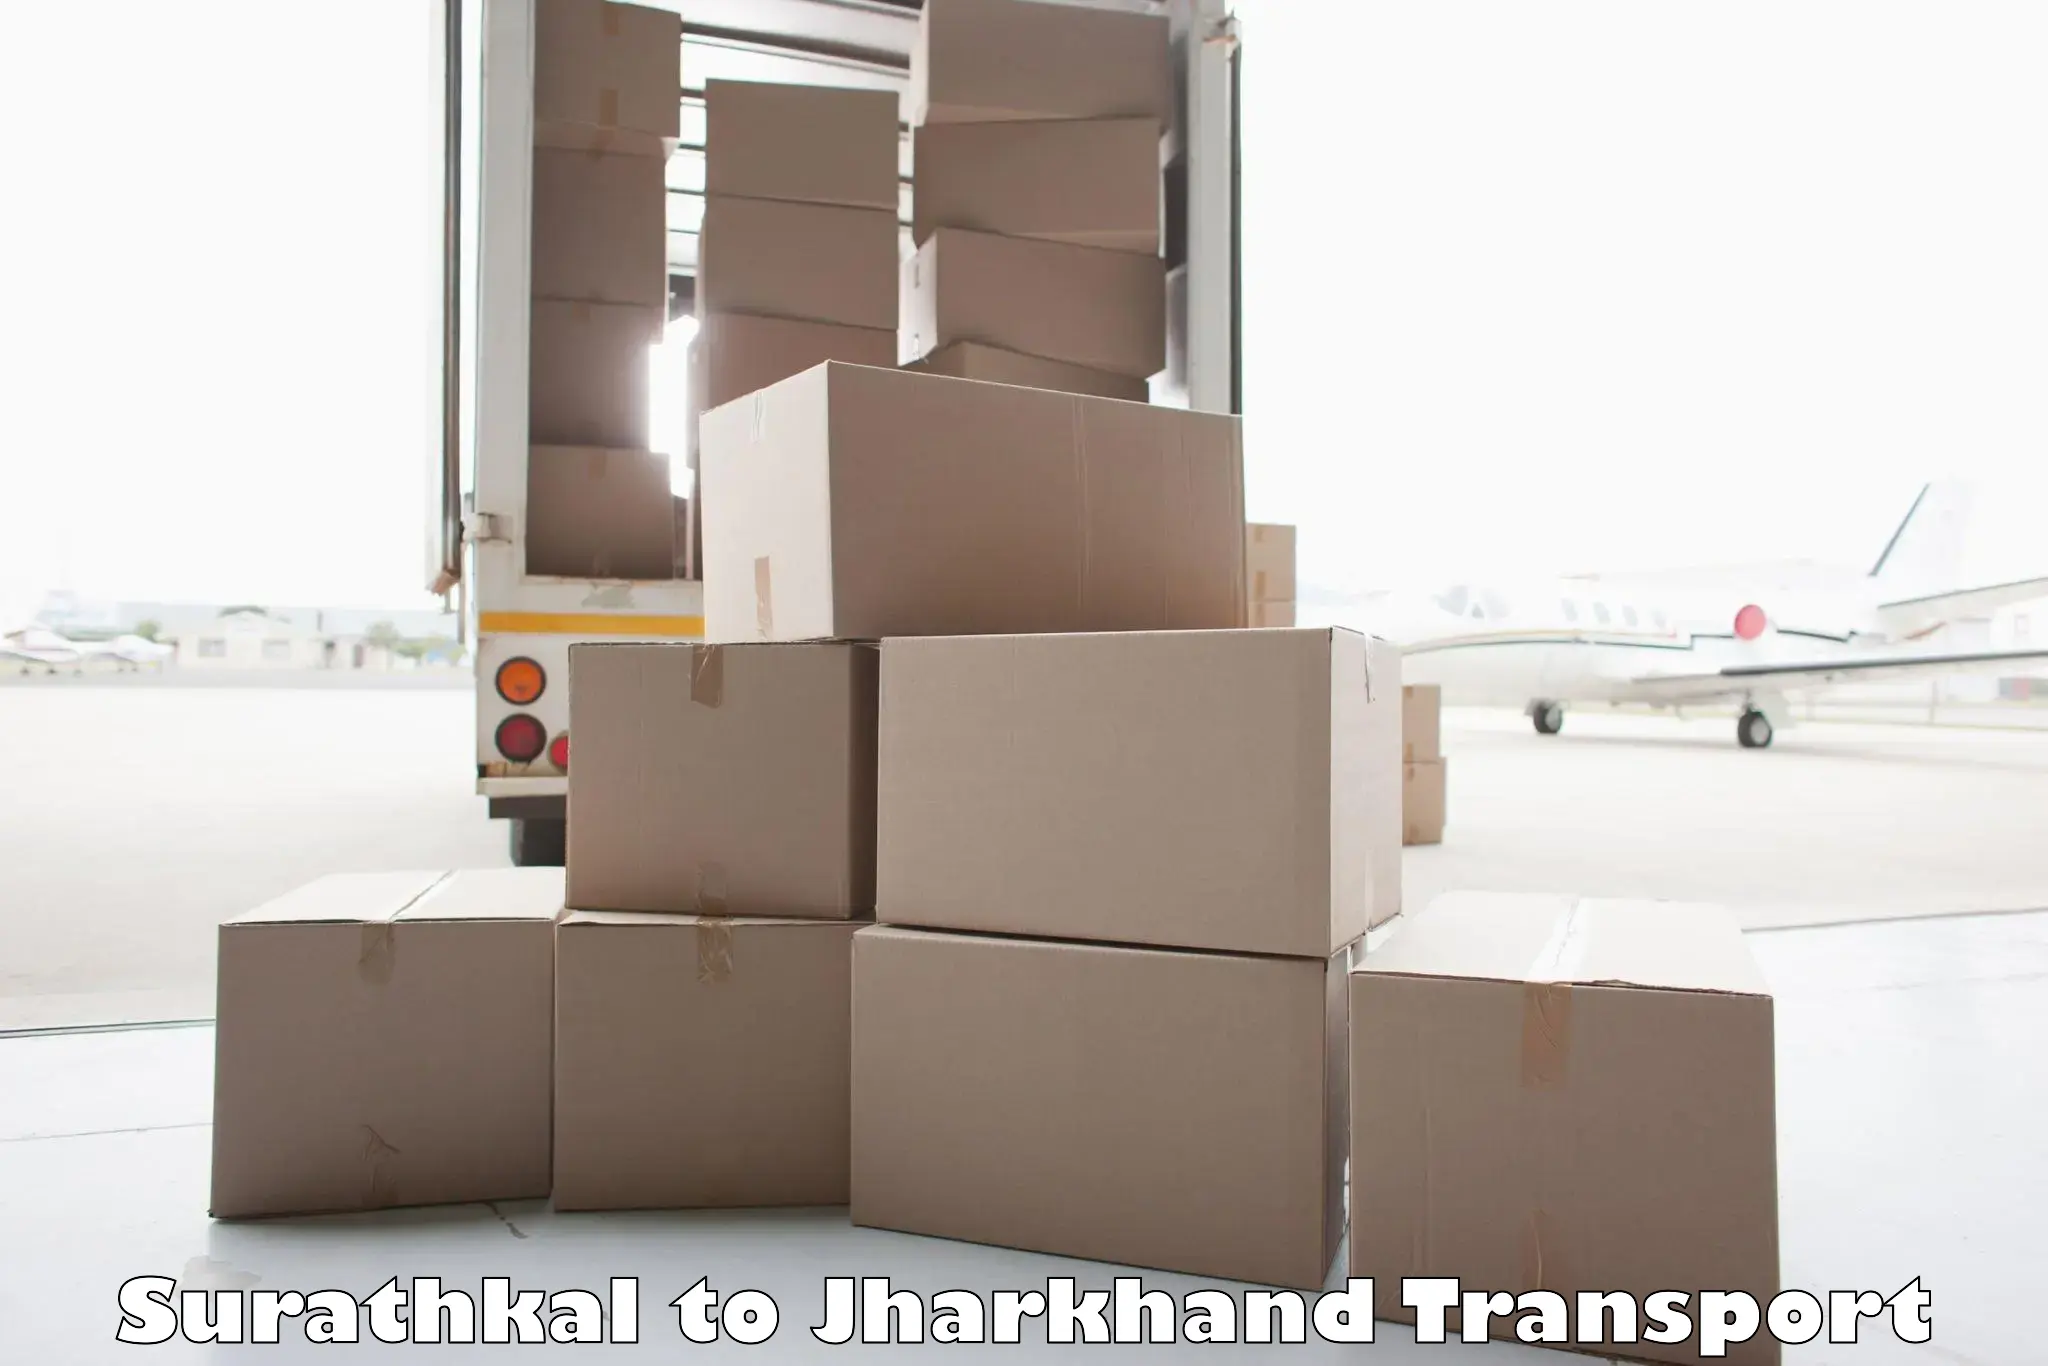 Pick up transport service Surathkal to Medininagar